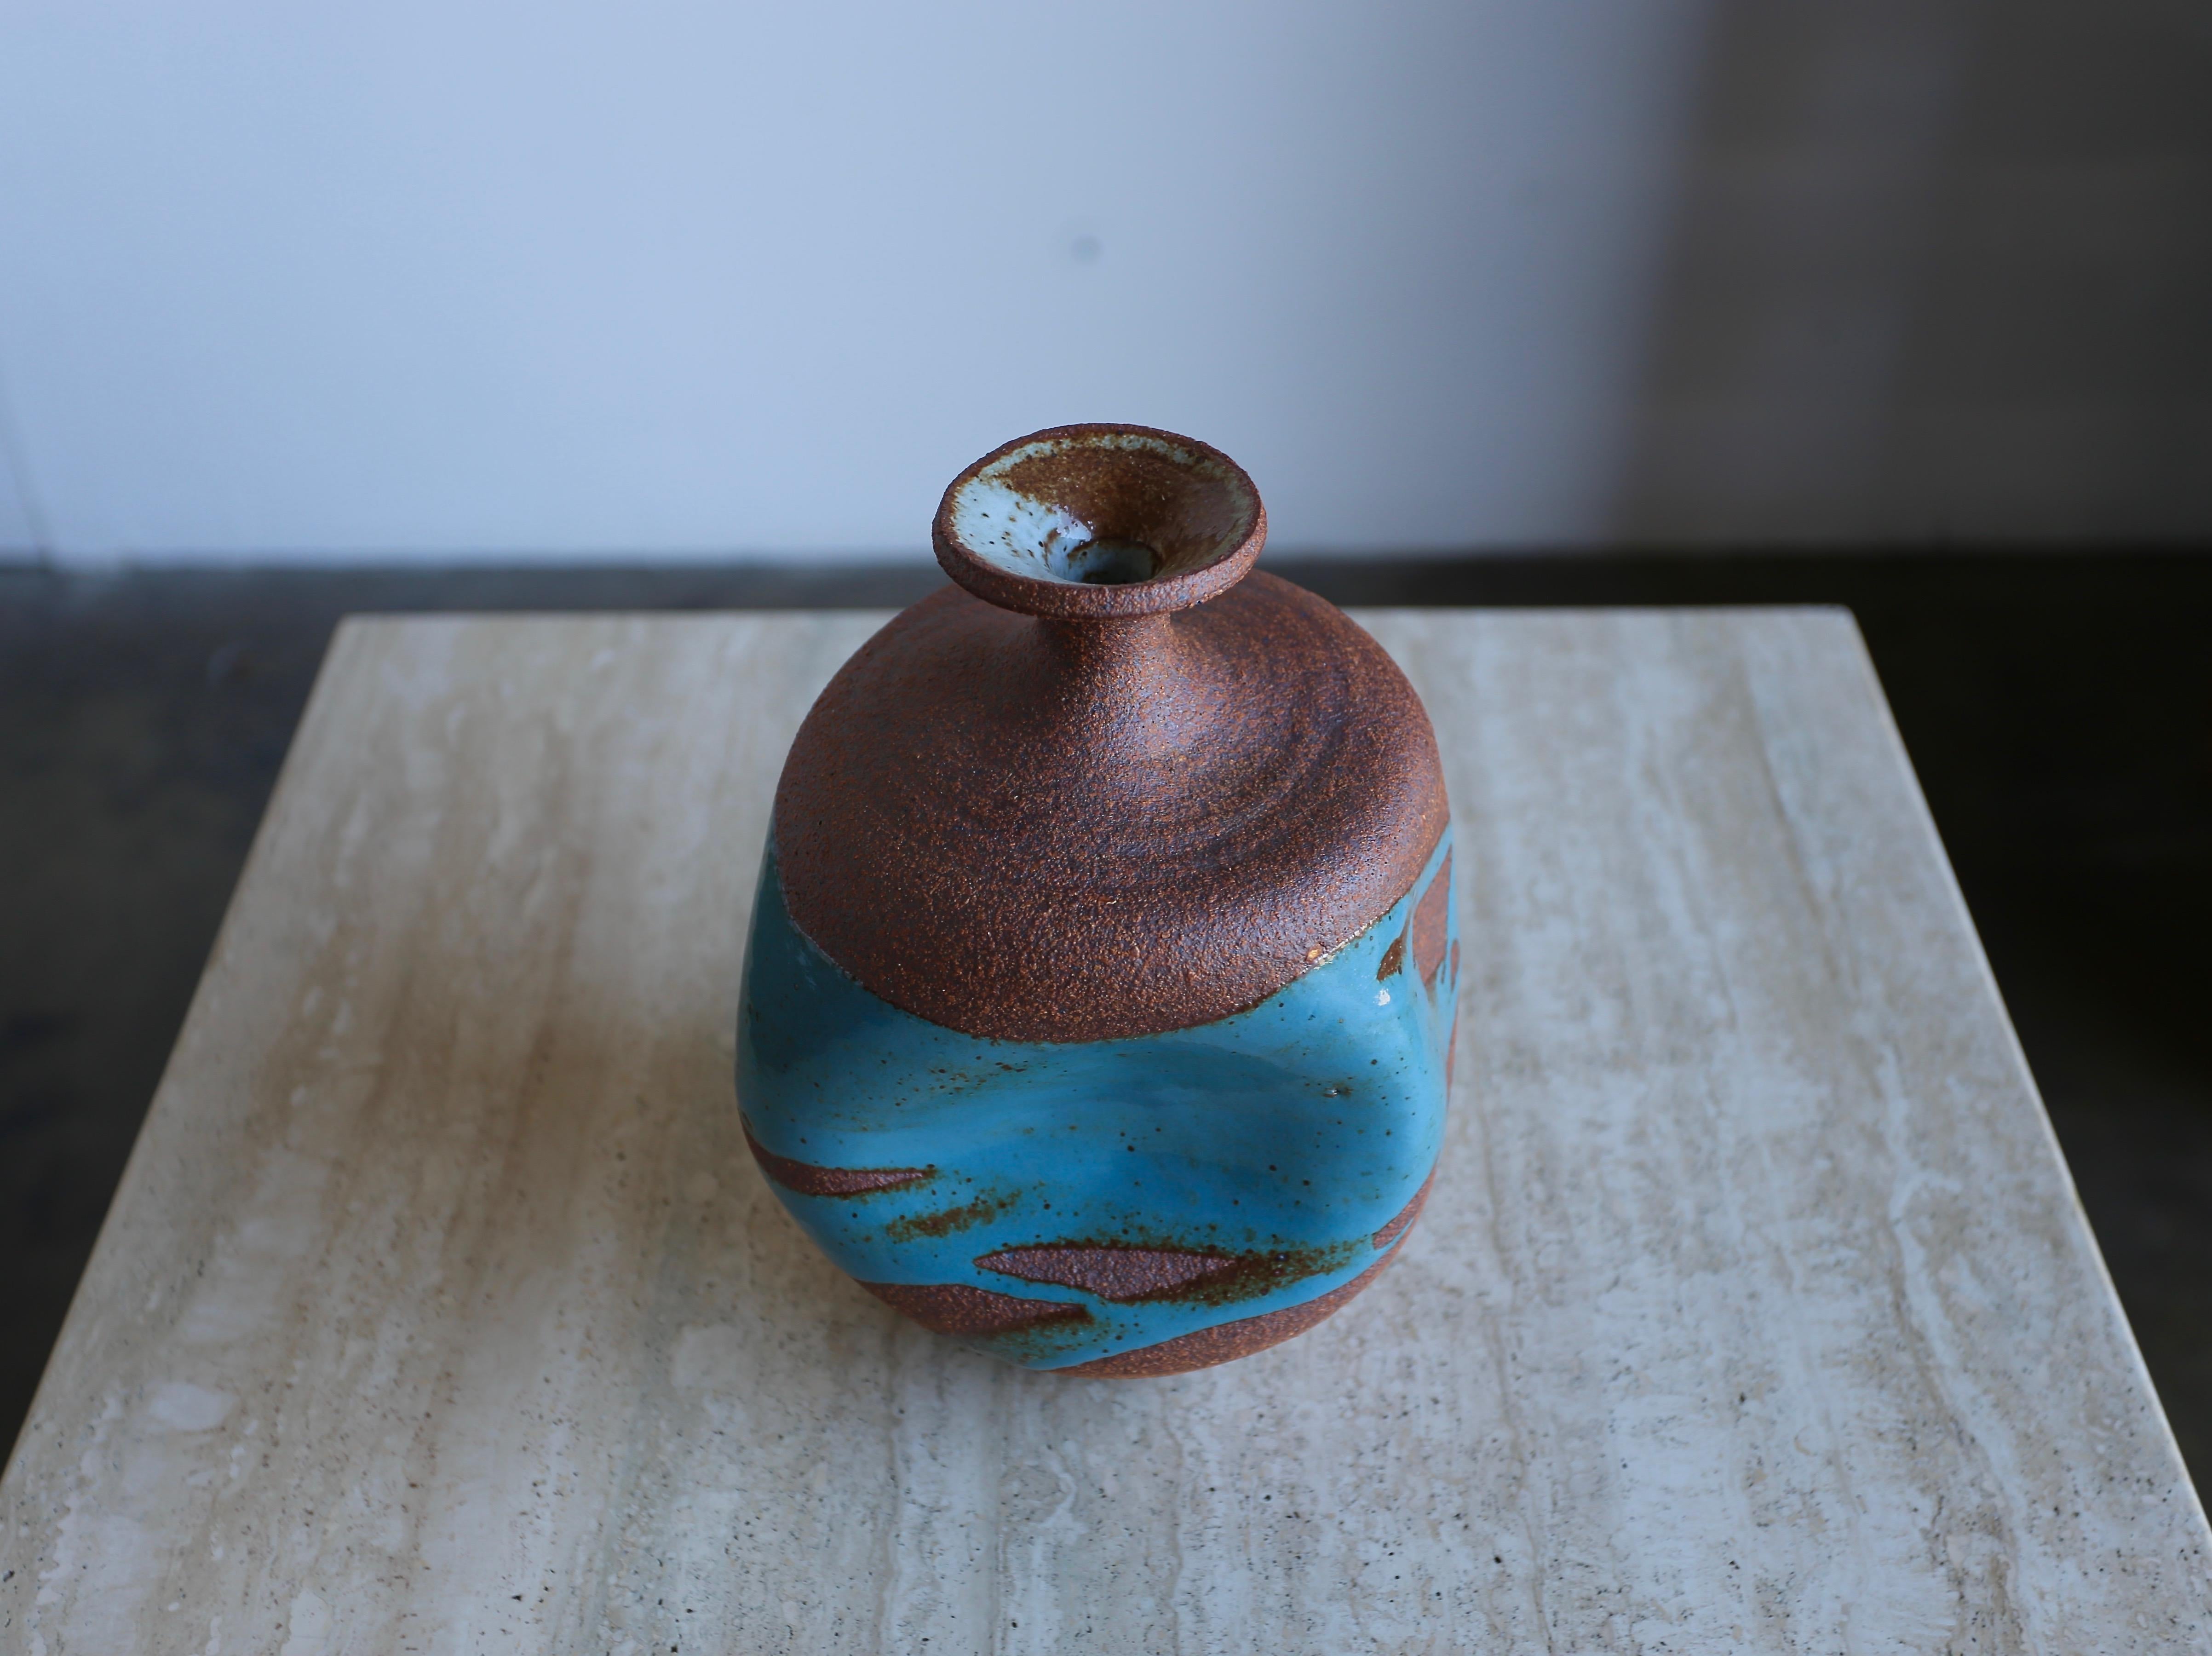 Sculptural ceramic vase by Tim Keenan. Blue drip glaze on a tortured form vase.